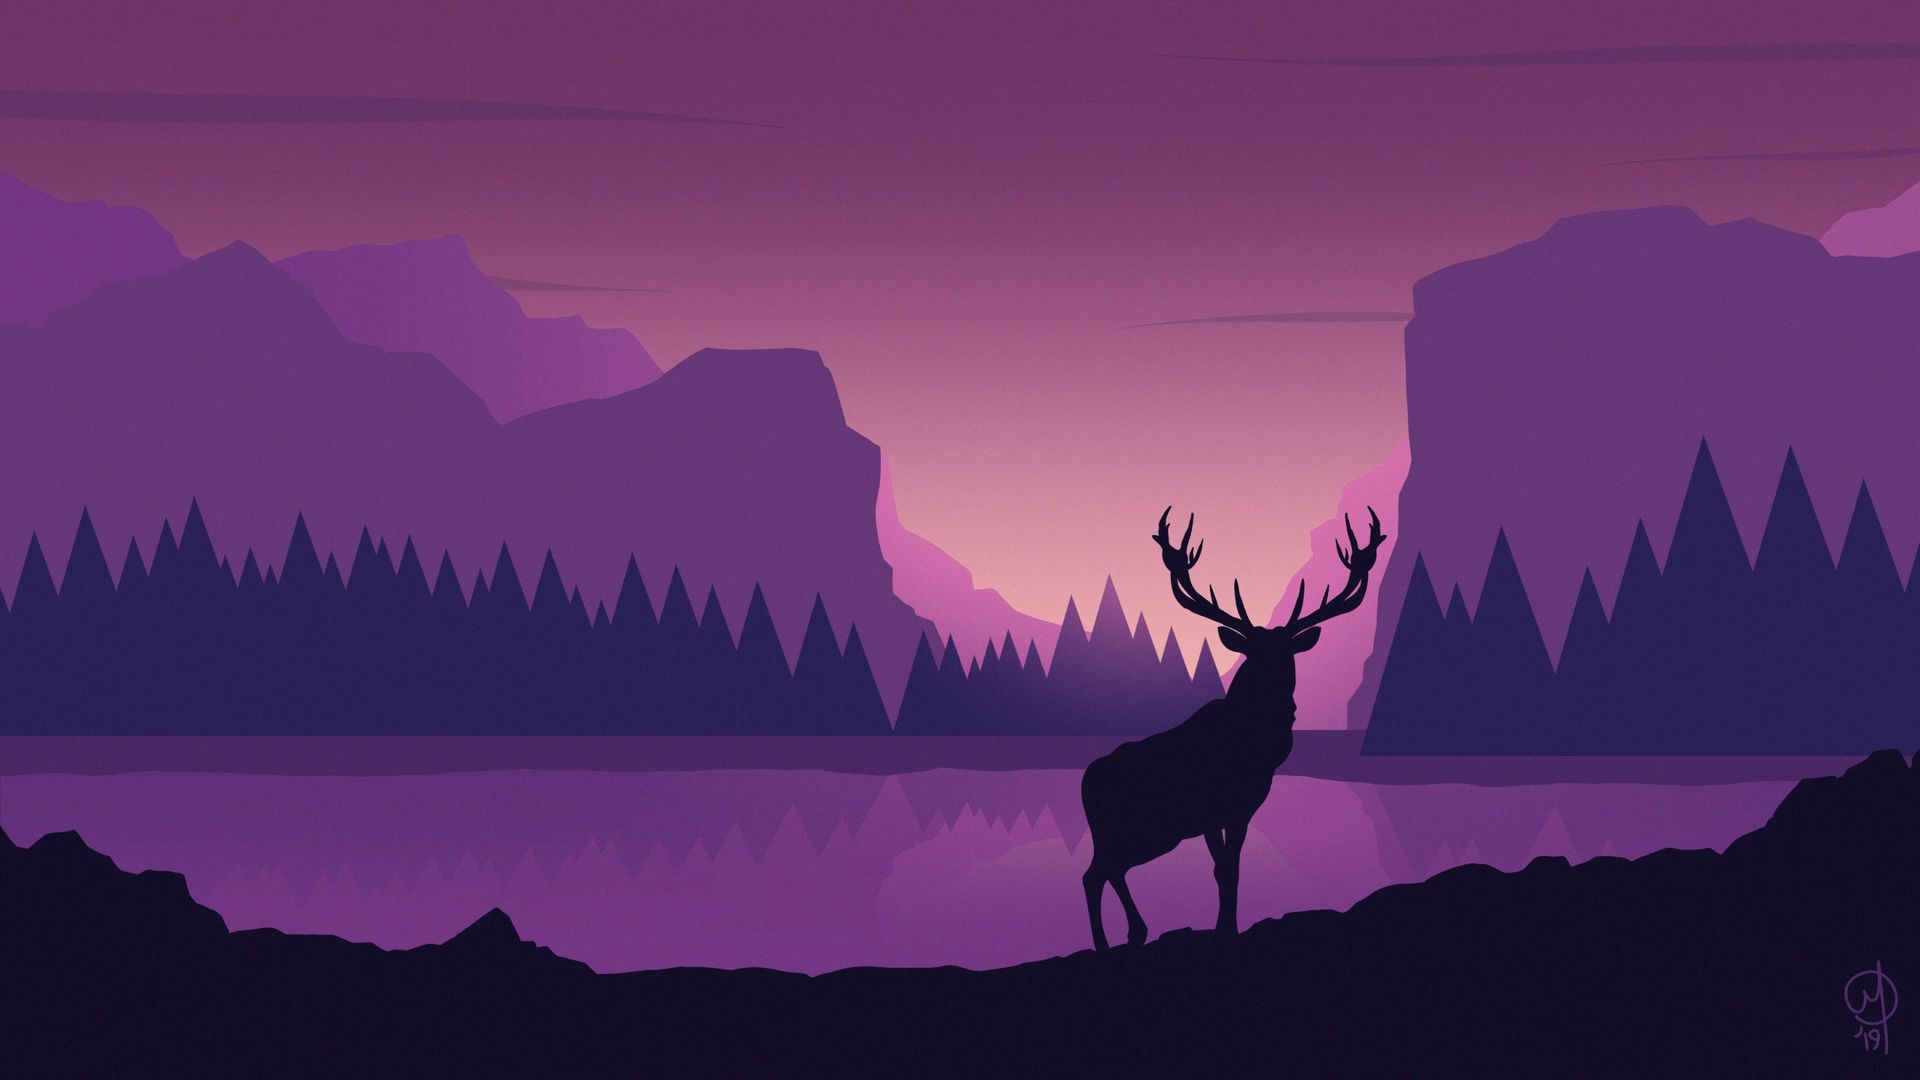 Download wallpaper 1920x1080 deer, art, vector, mountains, landscape full hd,  hdtv, fhd, 1080p hd background